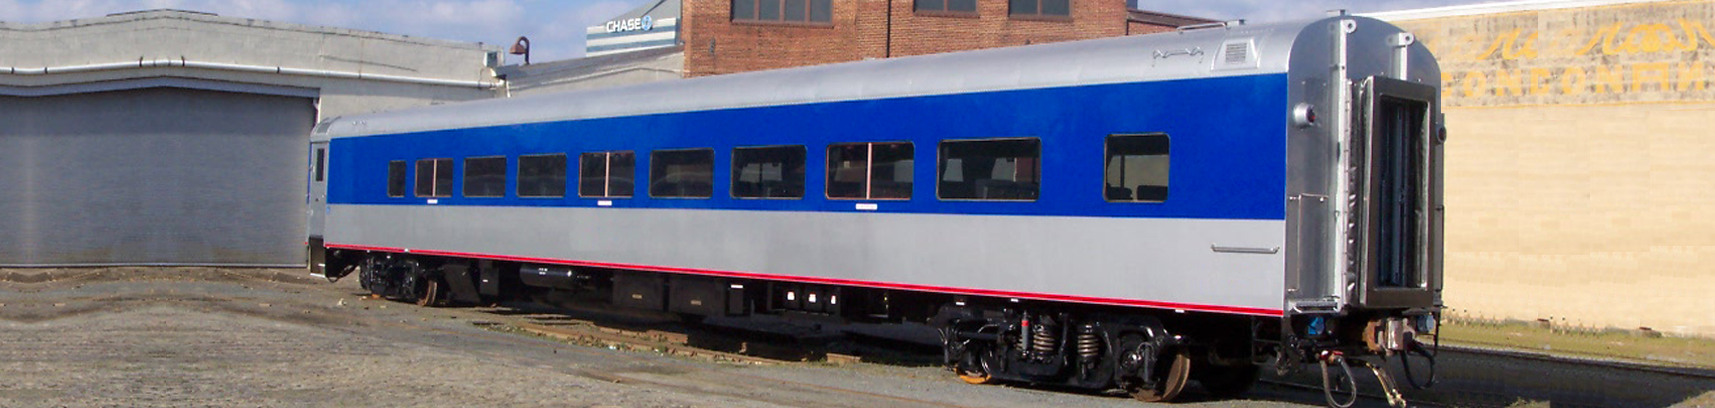 Delaware Car Company - Repair and Refurbishment service for passenger rail cars